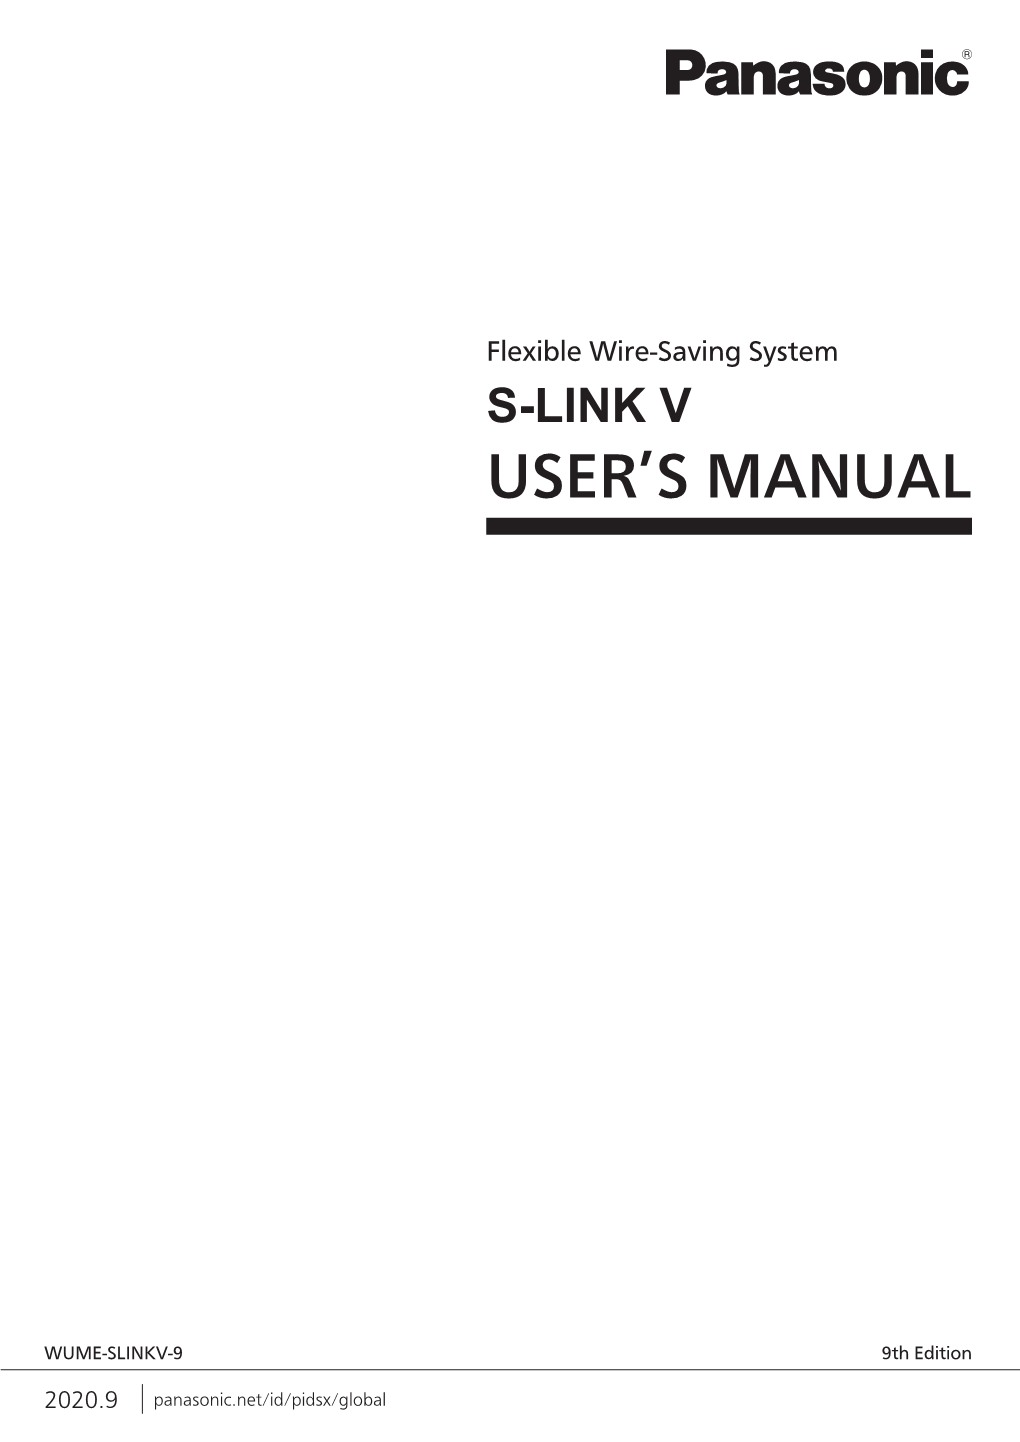 S-Link V User's Manual